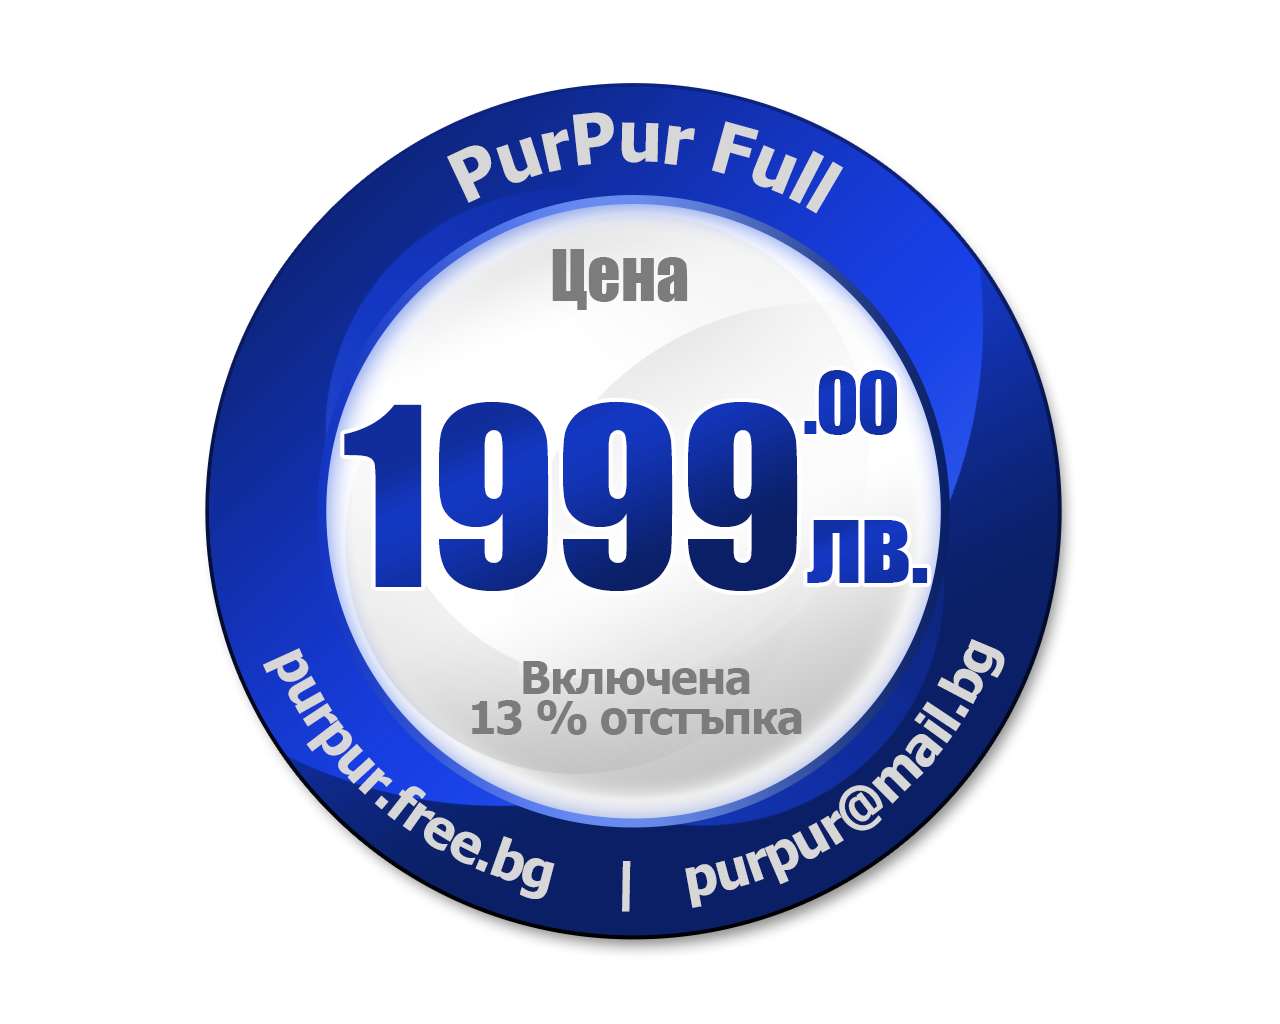 Цена на PurPur Full - 1999 лв. с включена 13% остъпка